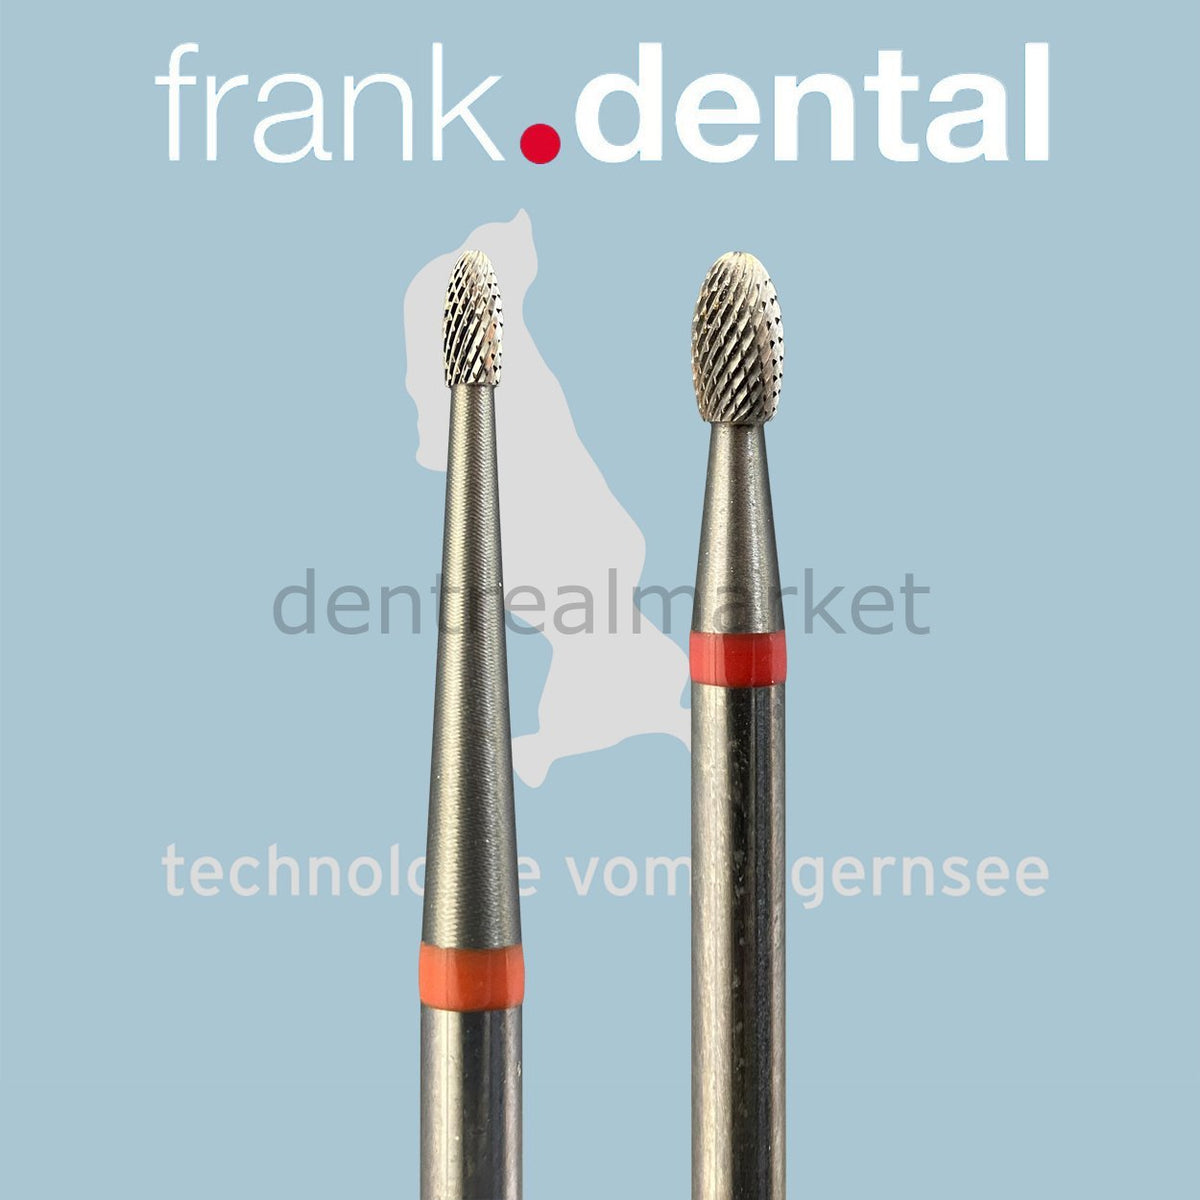 DentrealStore - Frank Dental Tungsten Carpide Monster Hard Burs - 73KF